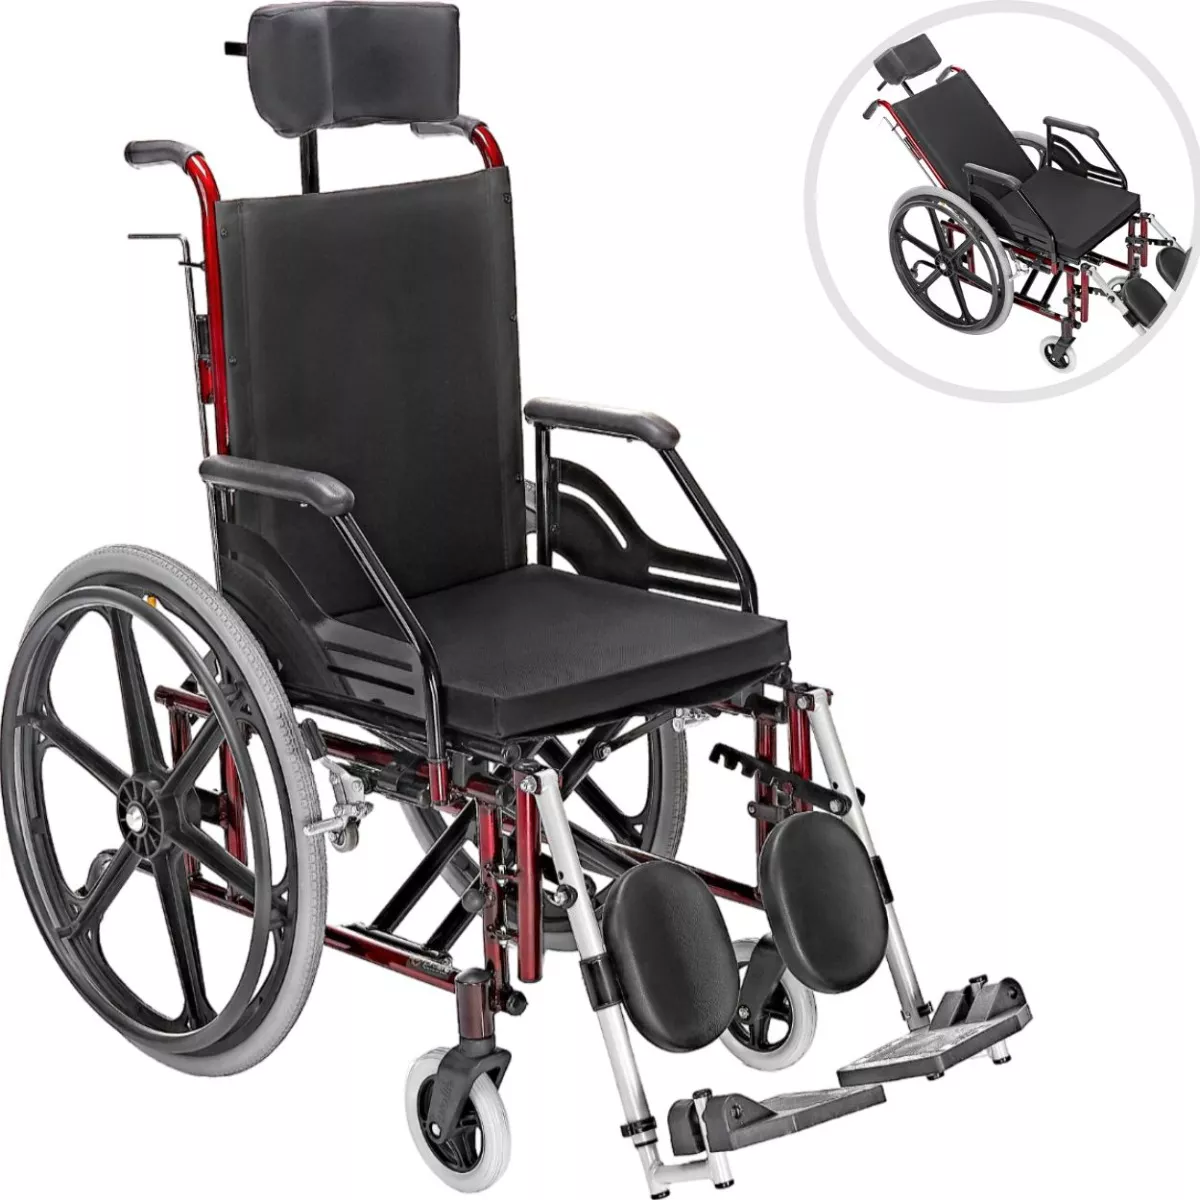 Terceira imagem para pesquisa de cadeira de roda motorizada